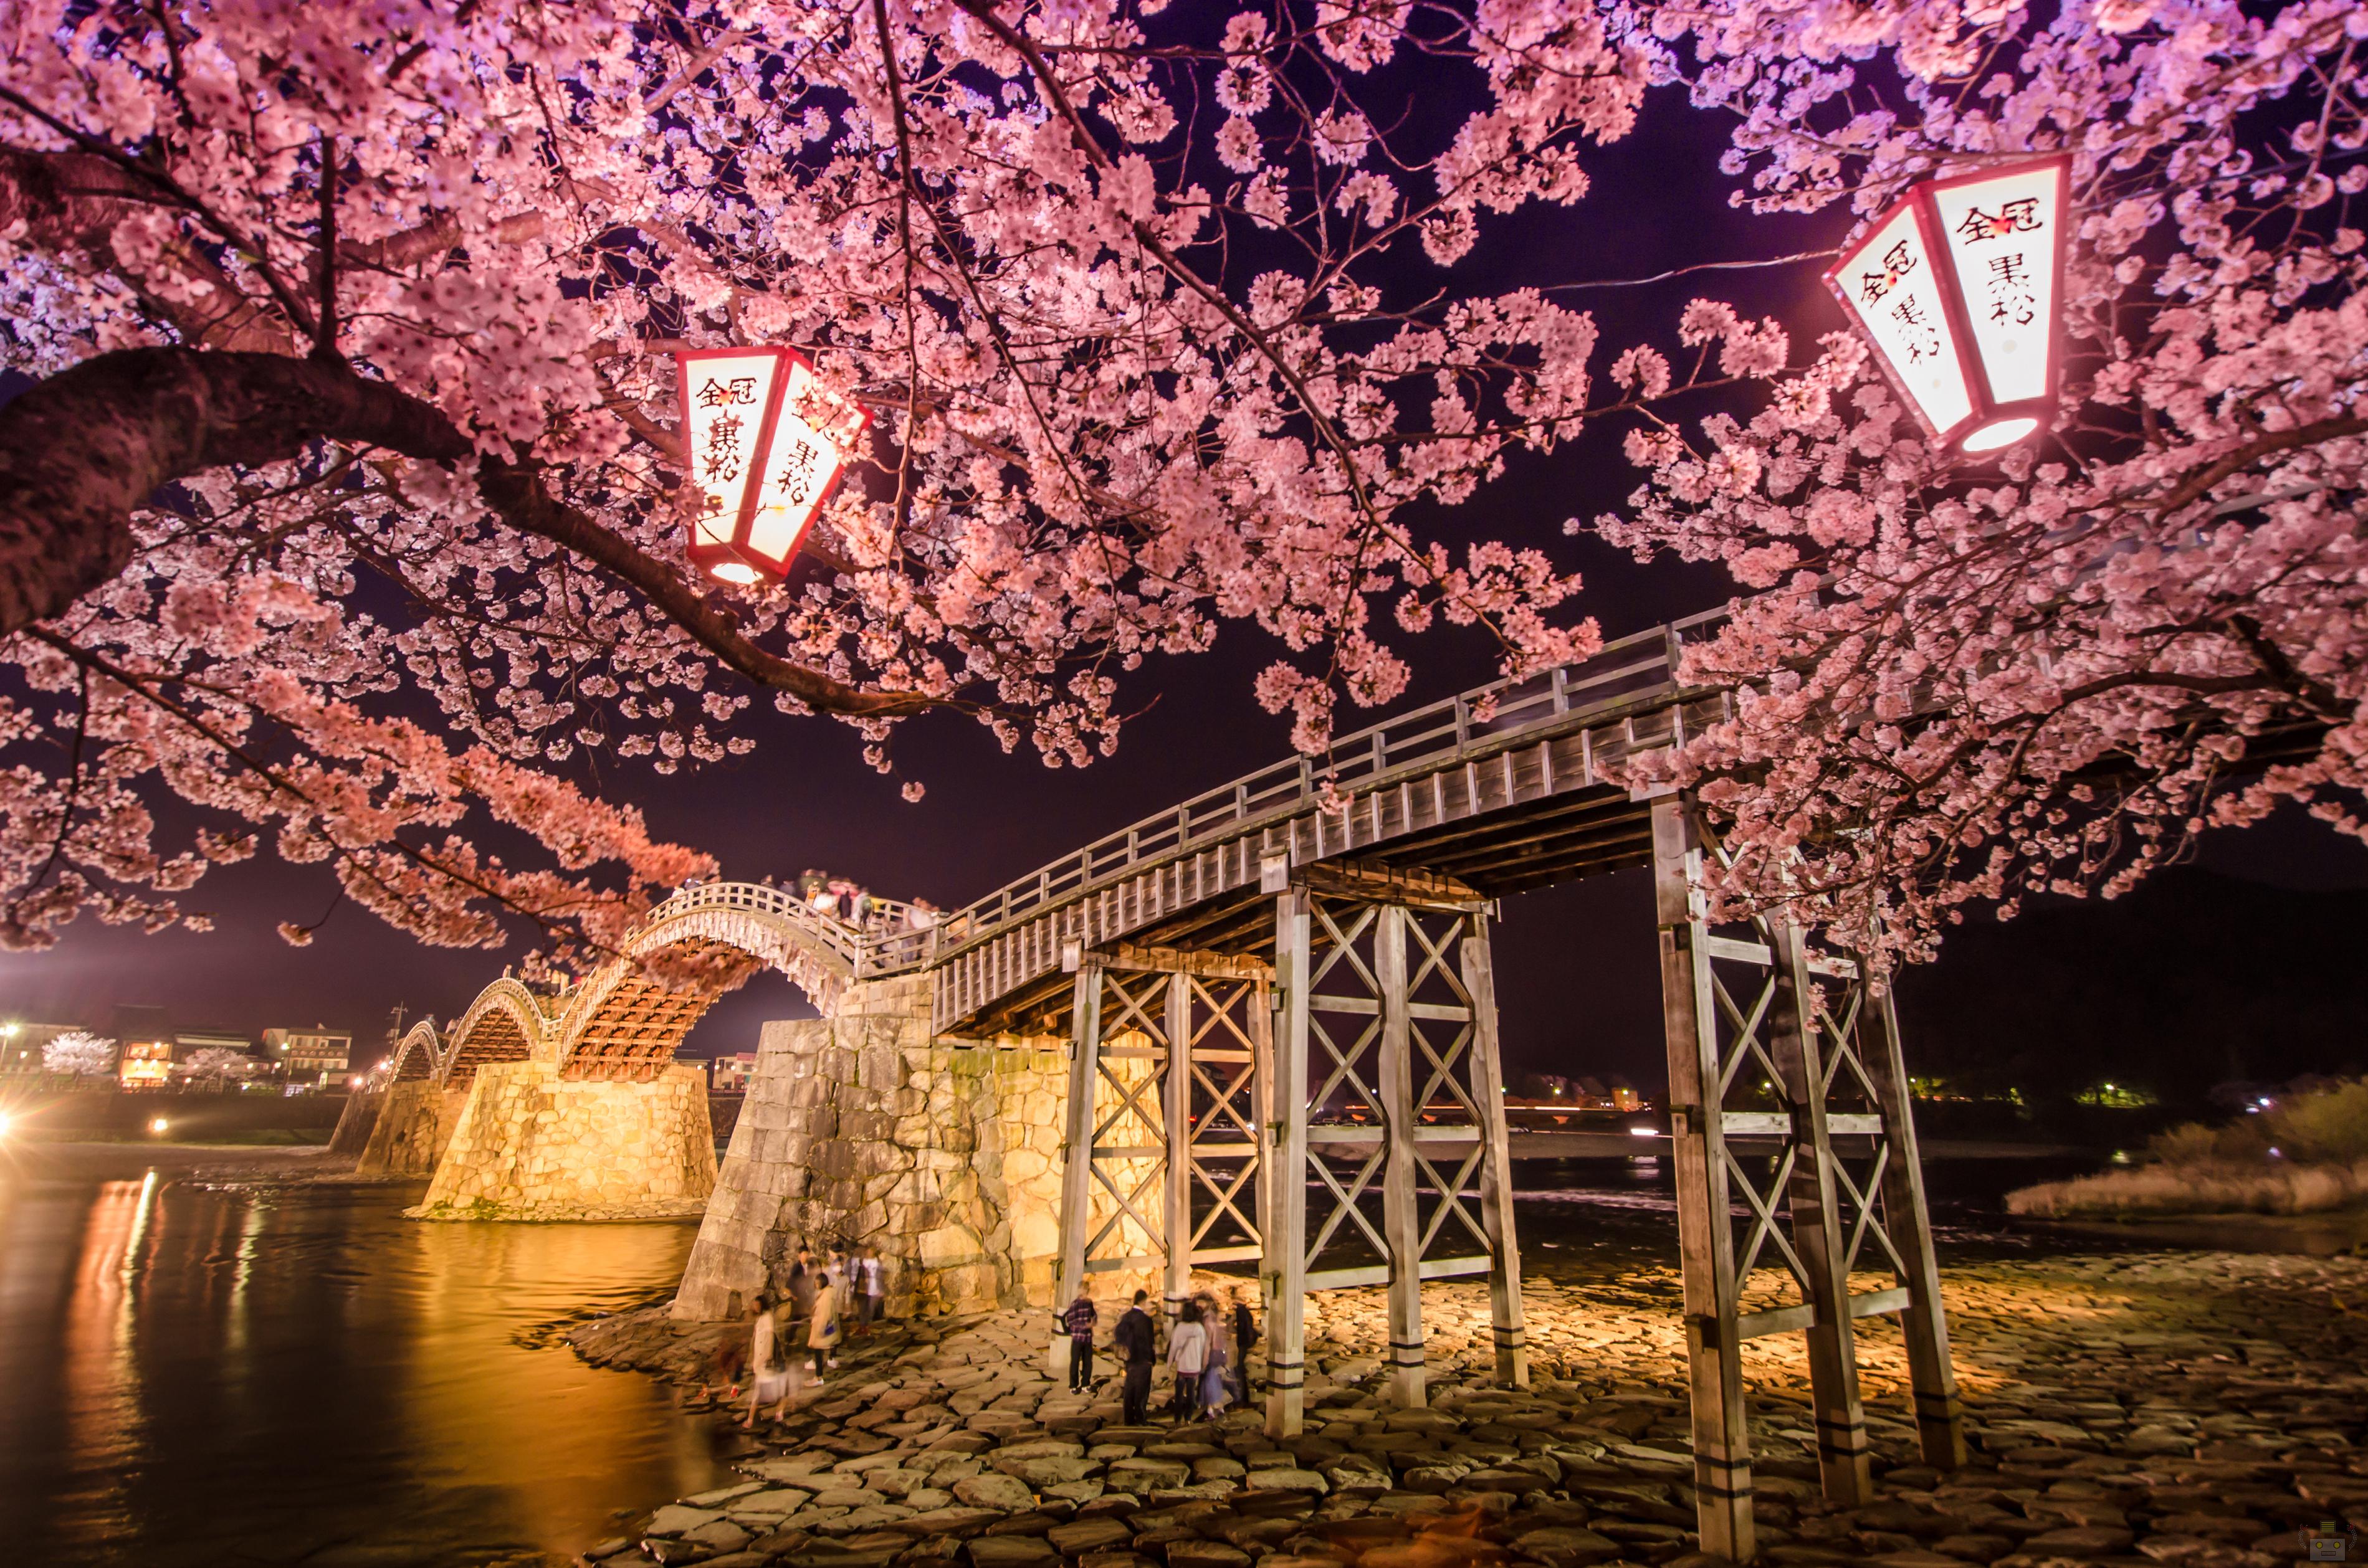 岩国の錦帯橋で夜桜撮ってきたよ 山口県の出張カメラマン長谷川涼太